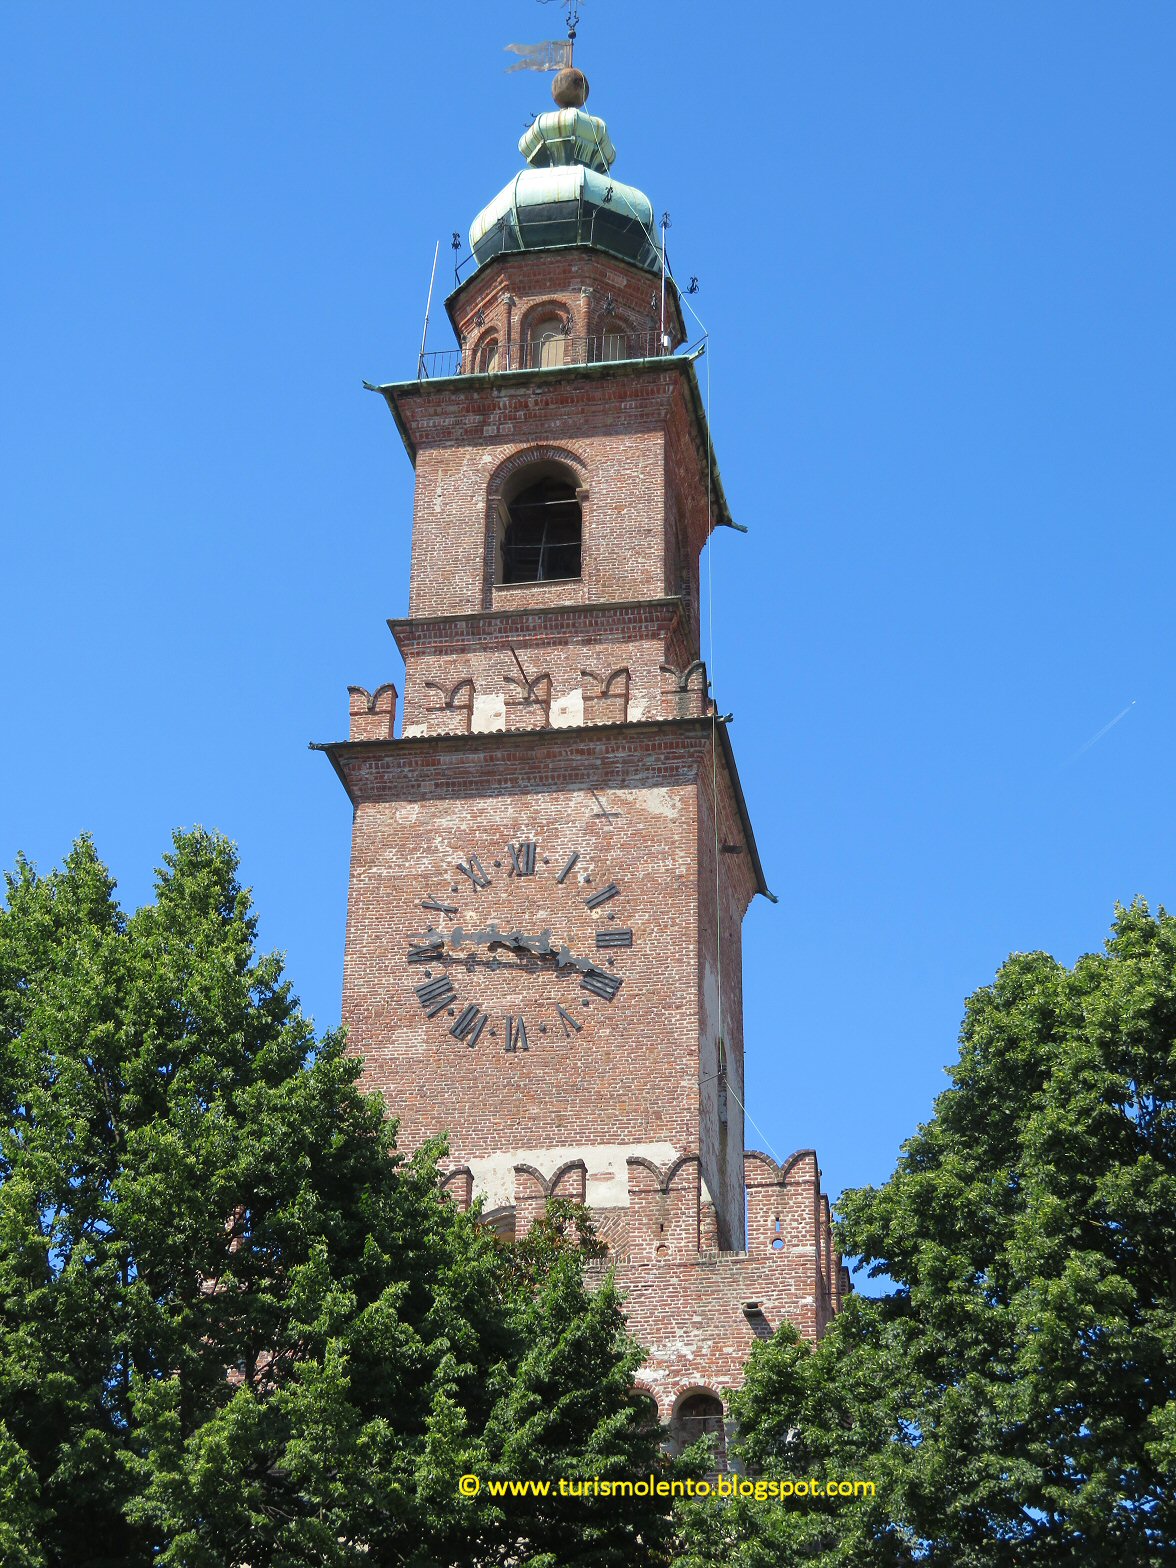 Molino Vigevano, Torre d'Isola